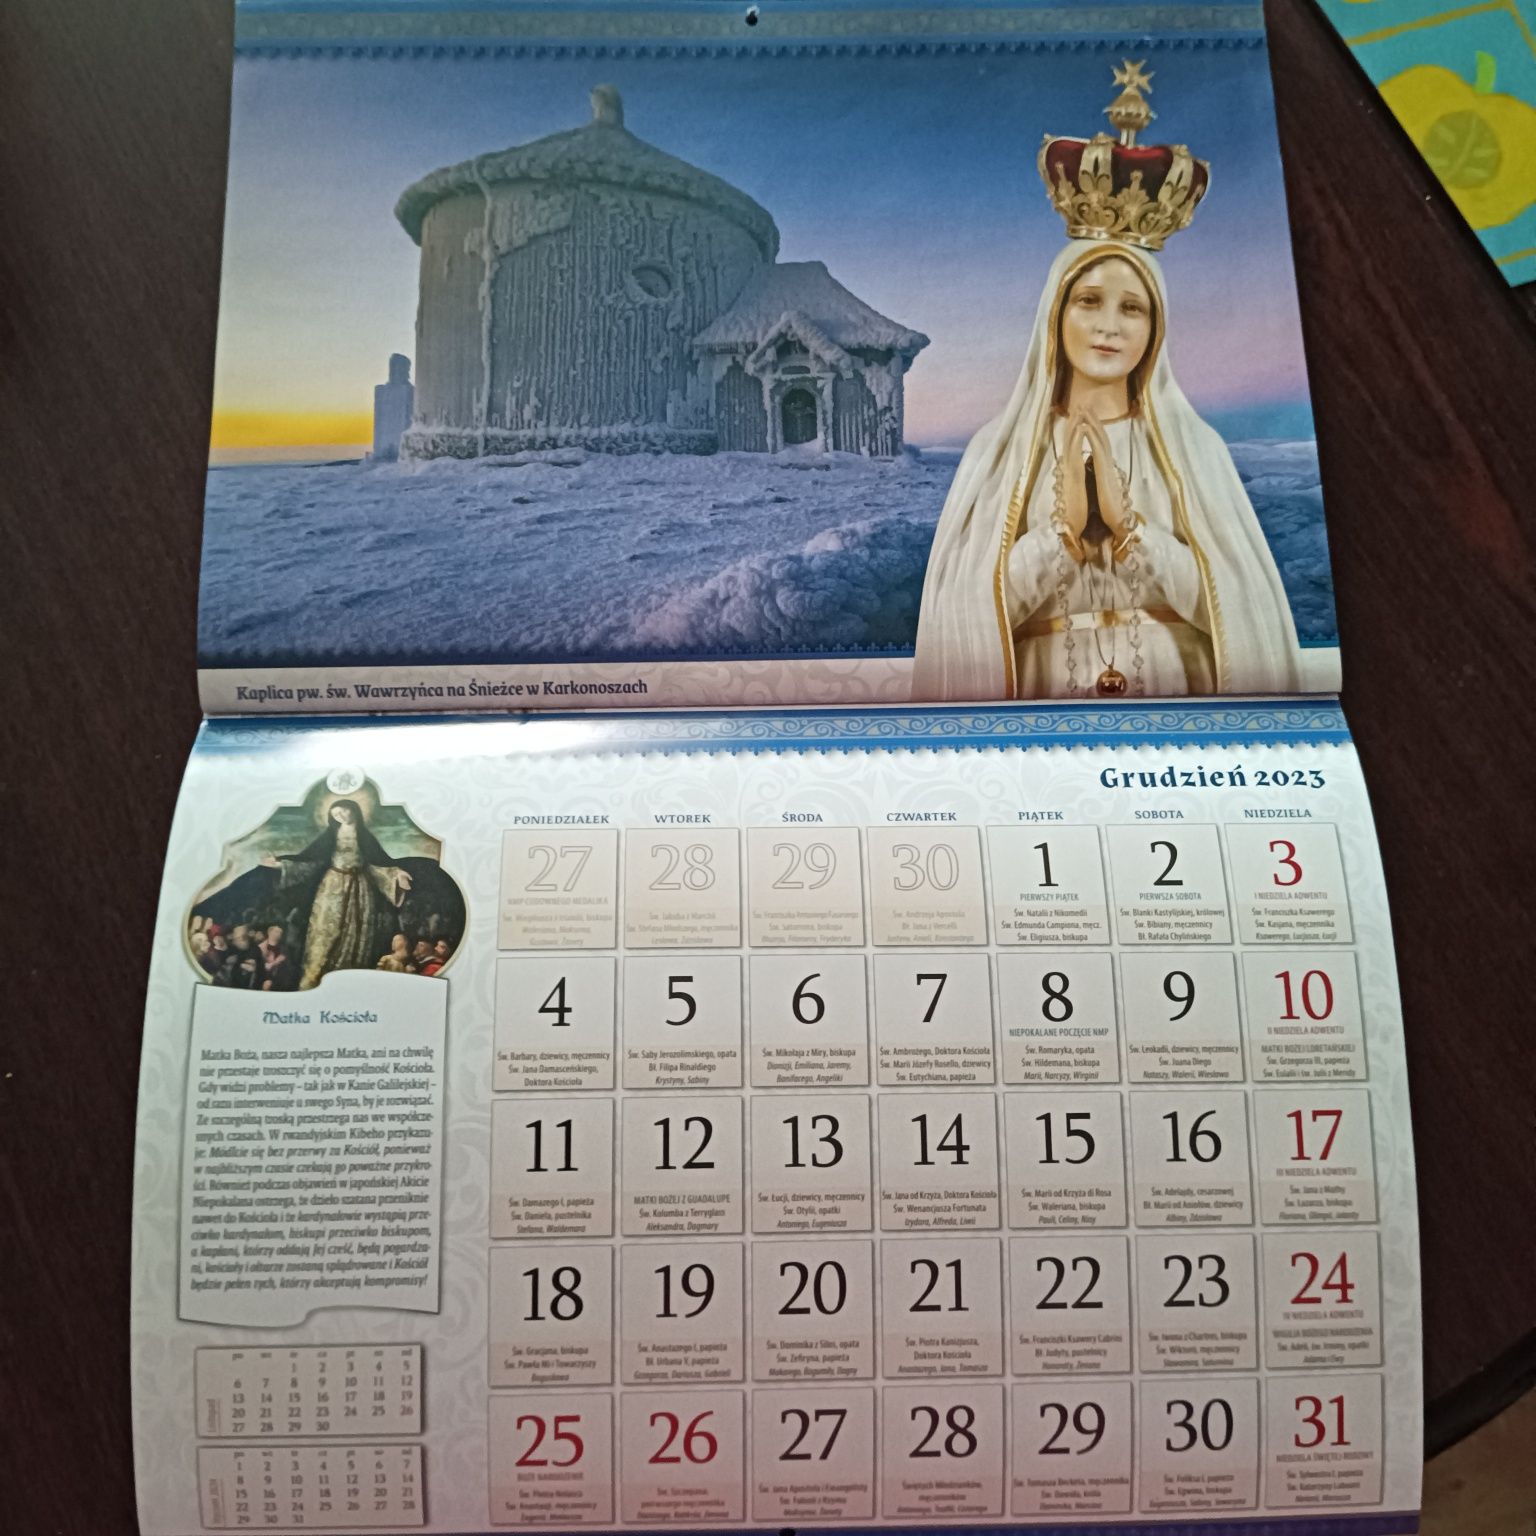 45. ,,365 dni z Maryją " stary kalendarz z 2023 roku